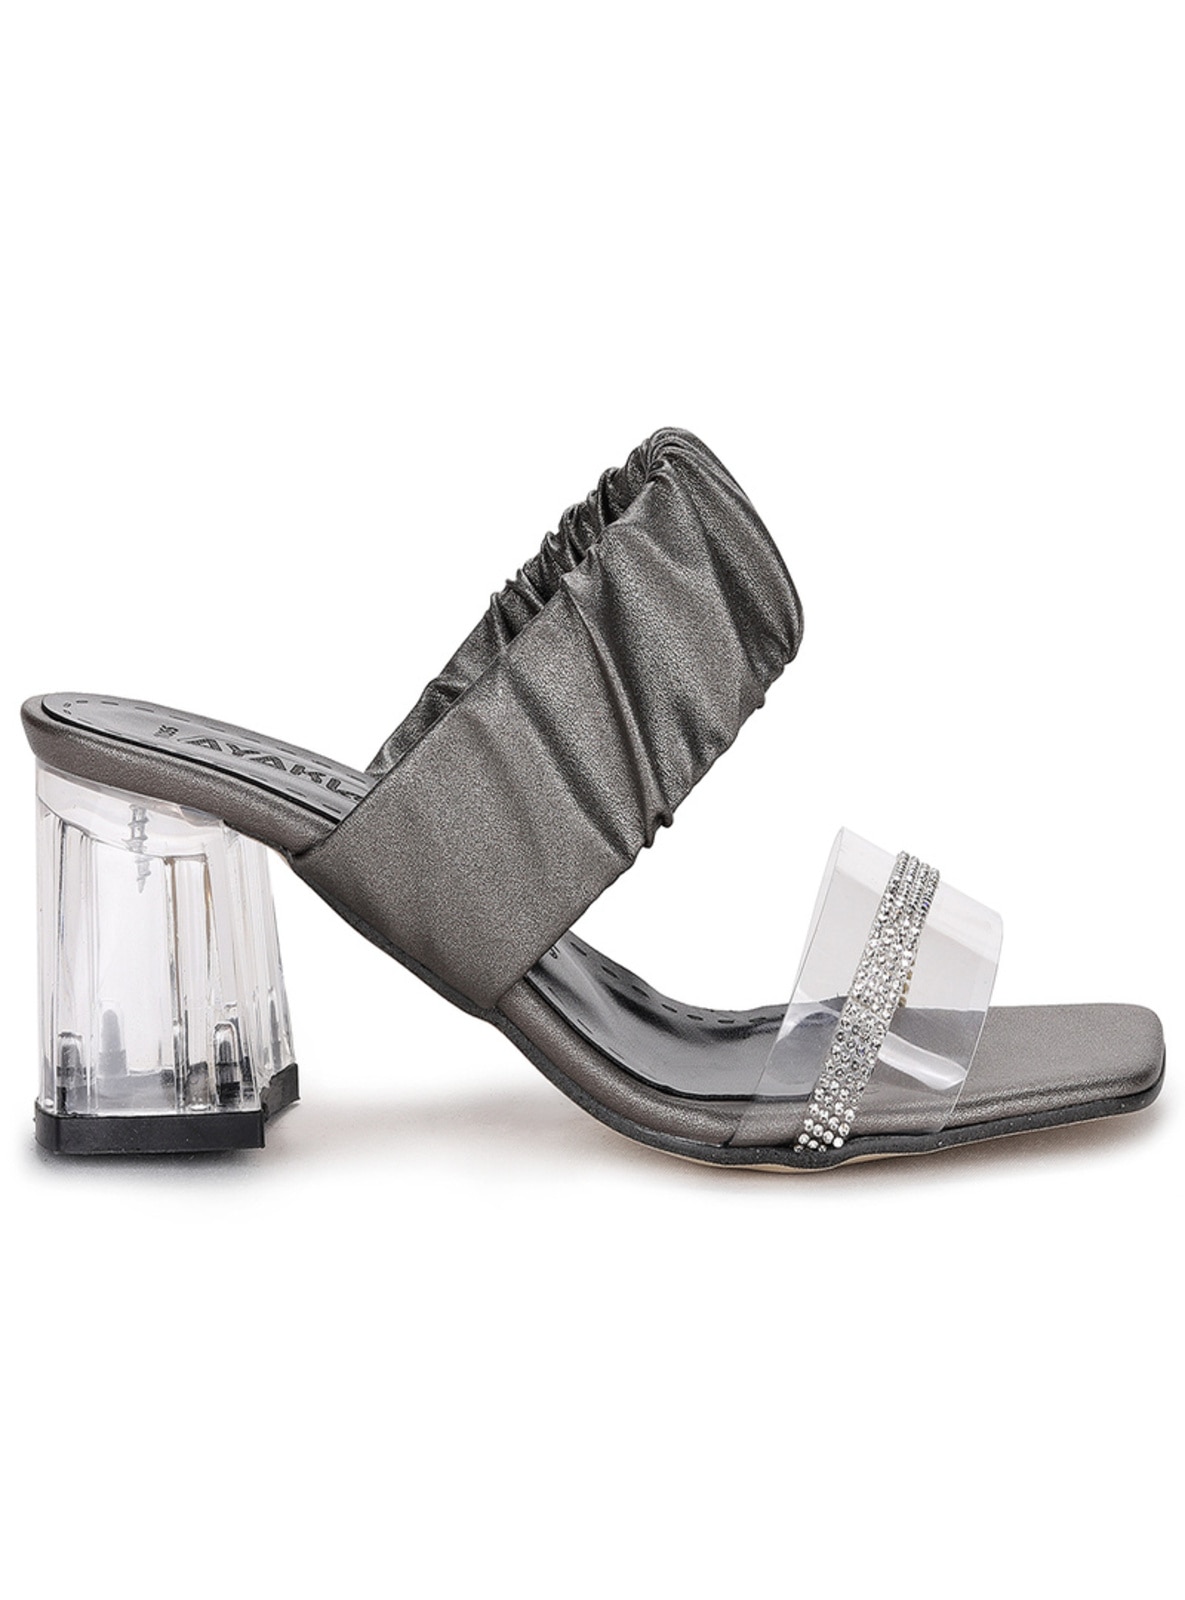 Sandal - Silver - Slippers